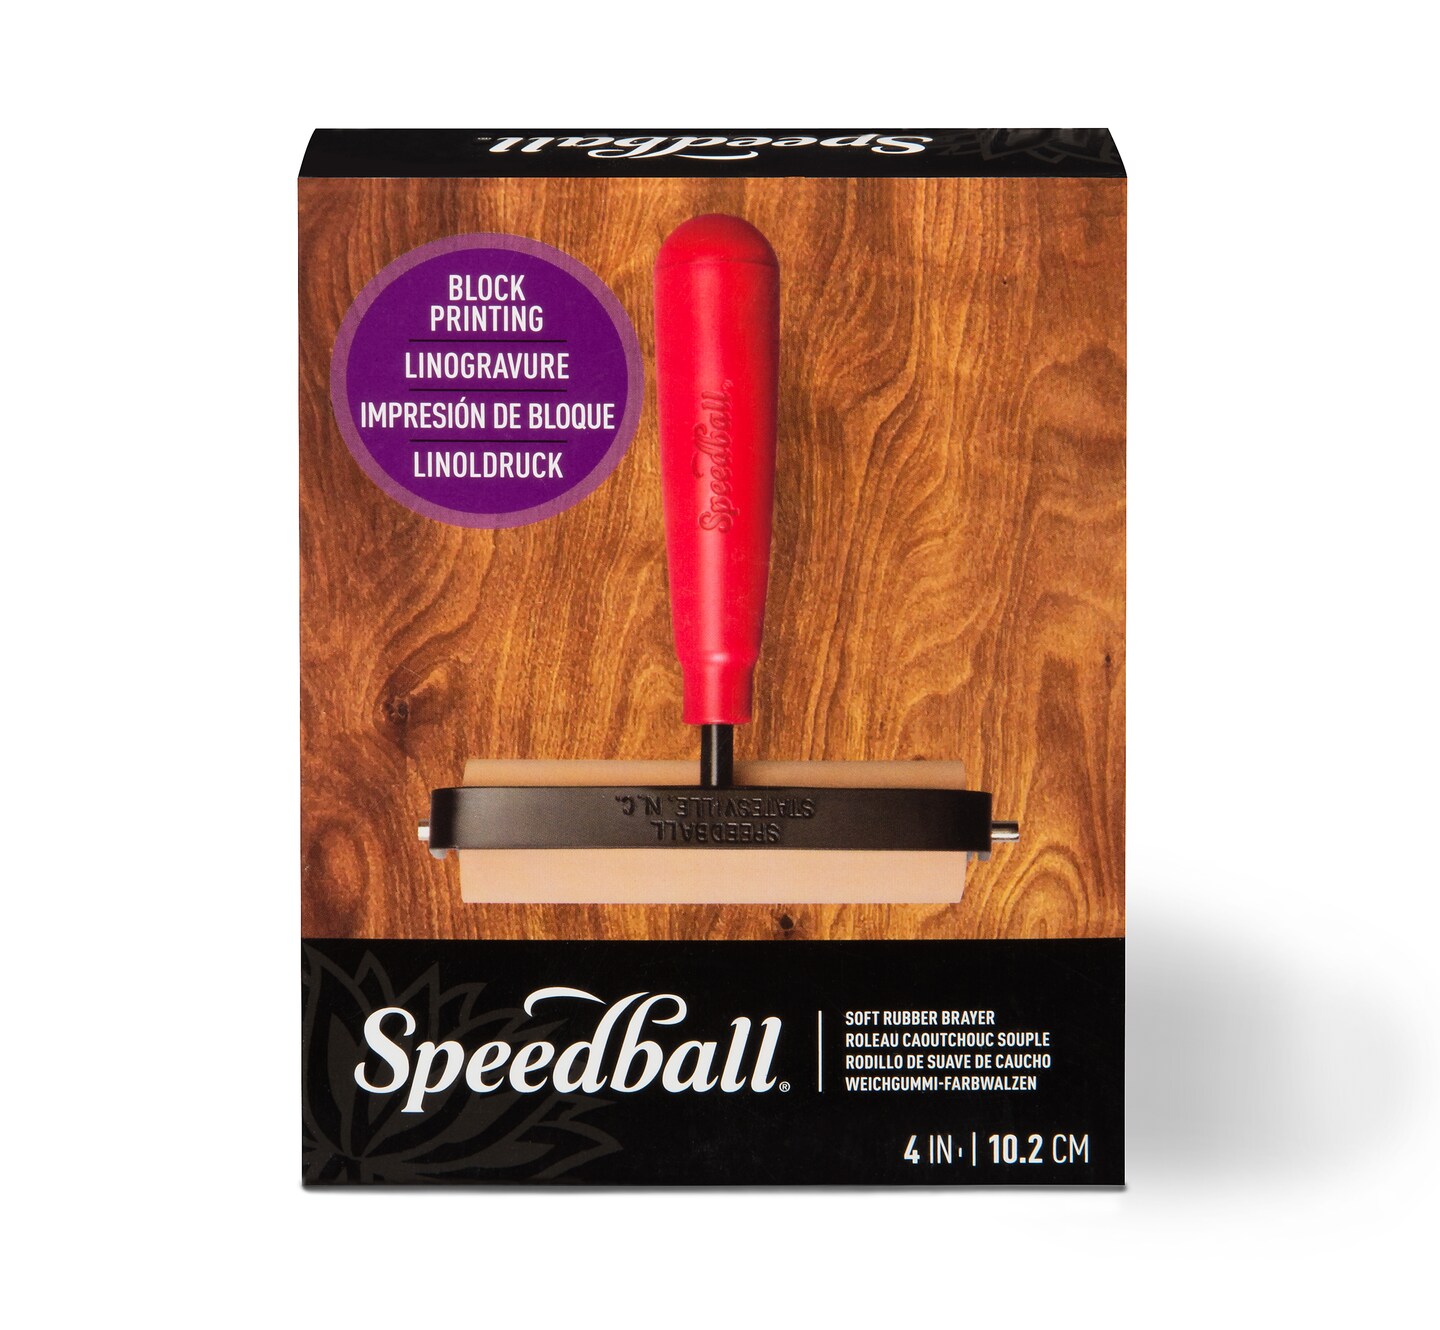 Speedball 4 Pop-In Roller Brayer Kit